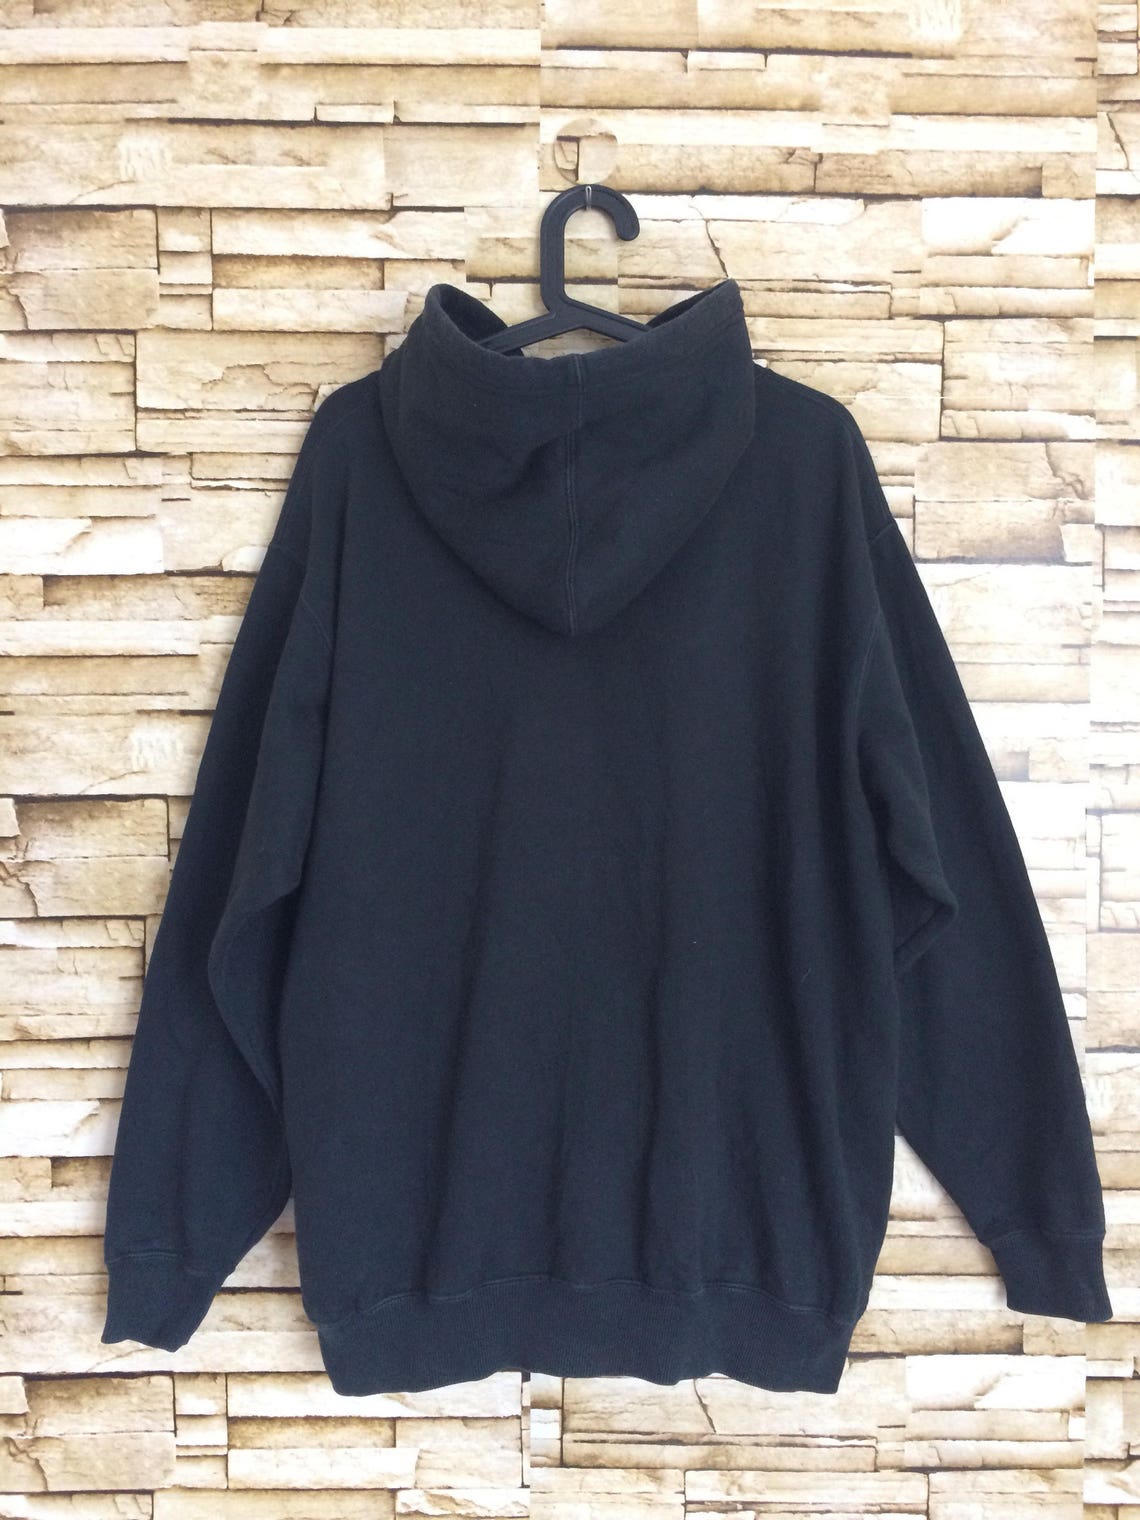 Airwalk hoodie jumper black color Large size skate hip | Etsy